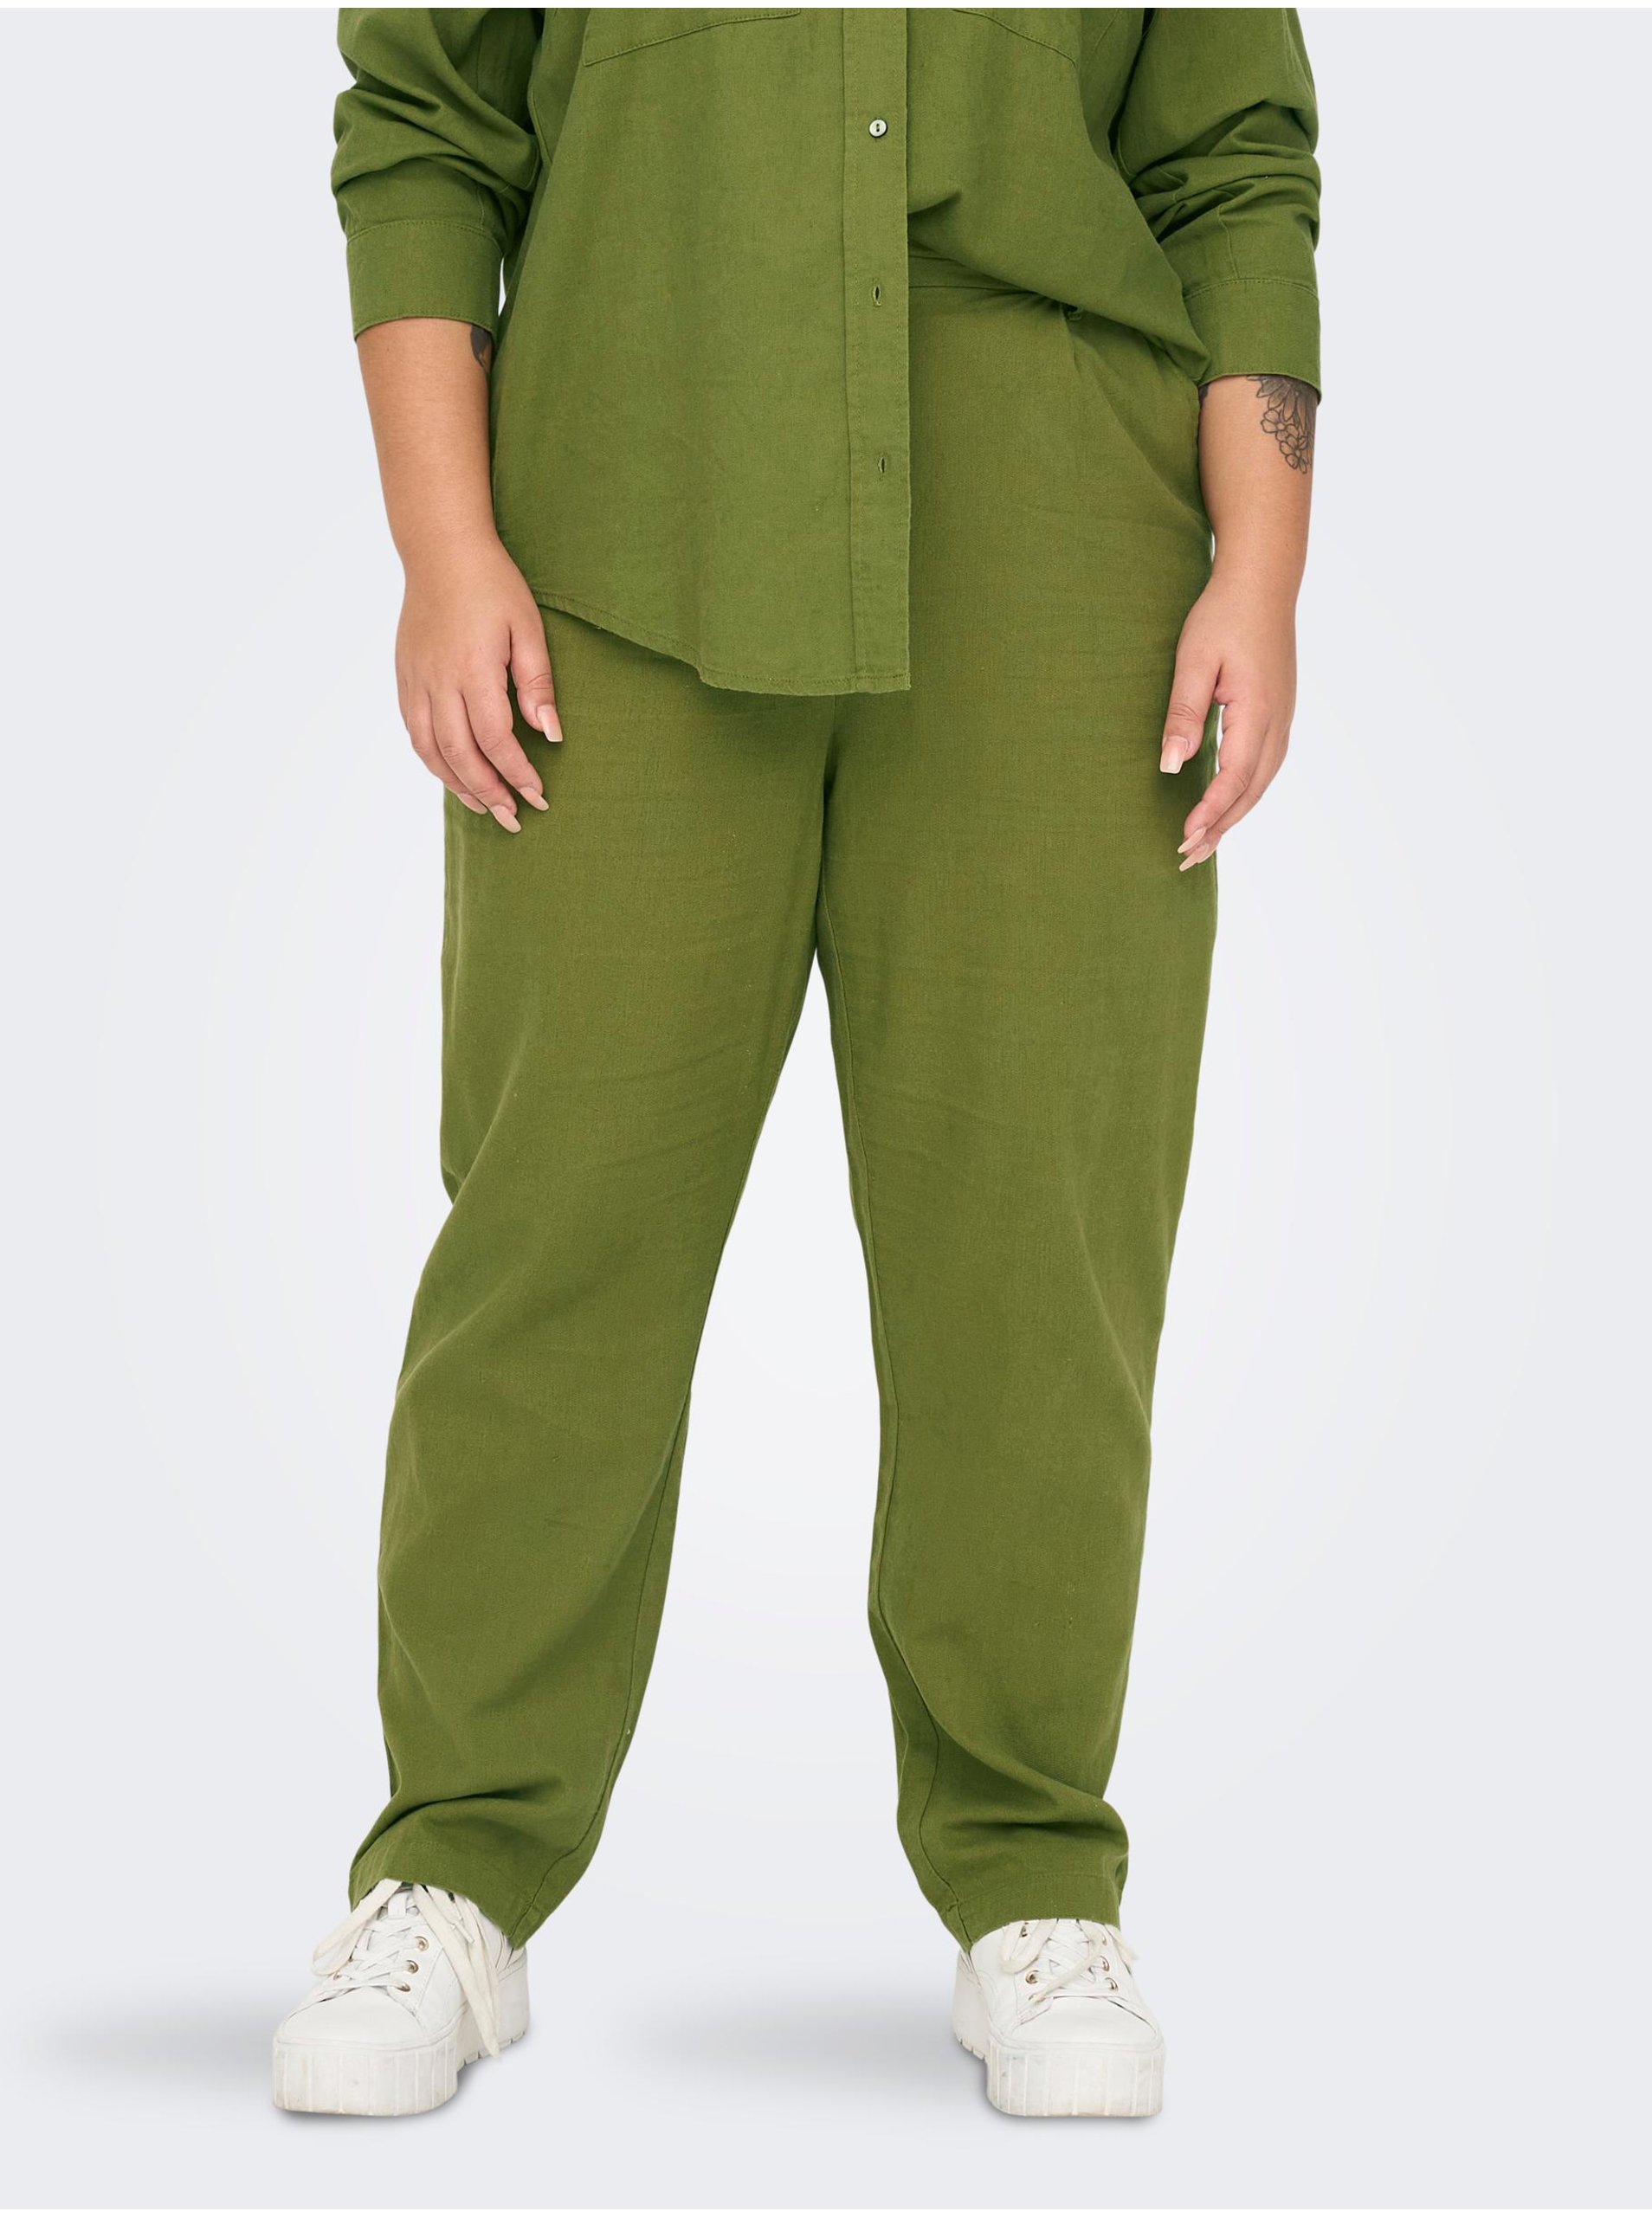 Lacno Zelené dámske ľanové nohavice ONLY CARMAKOMA Caro